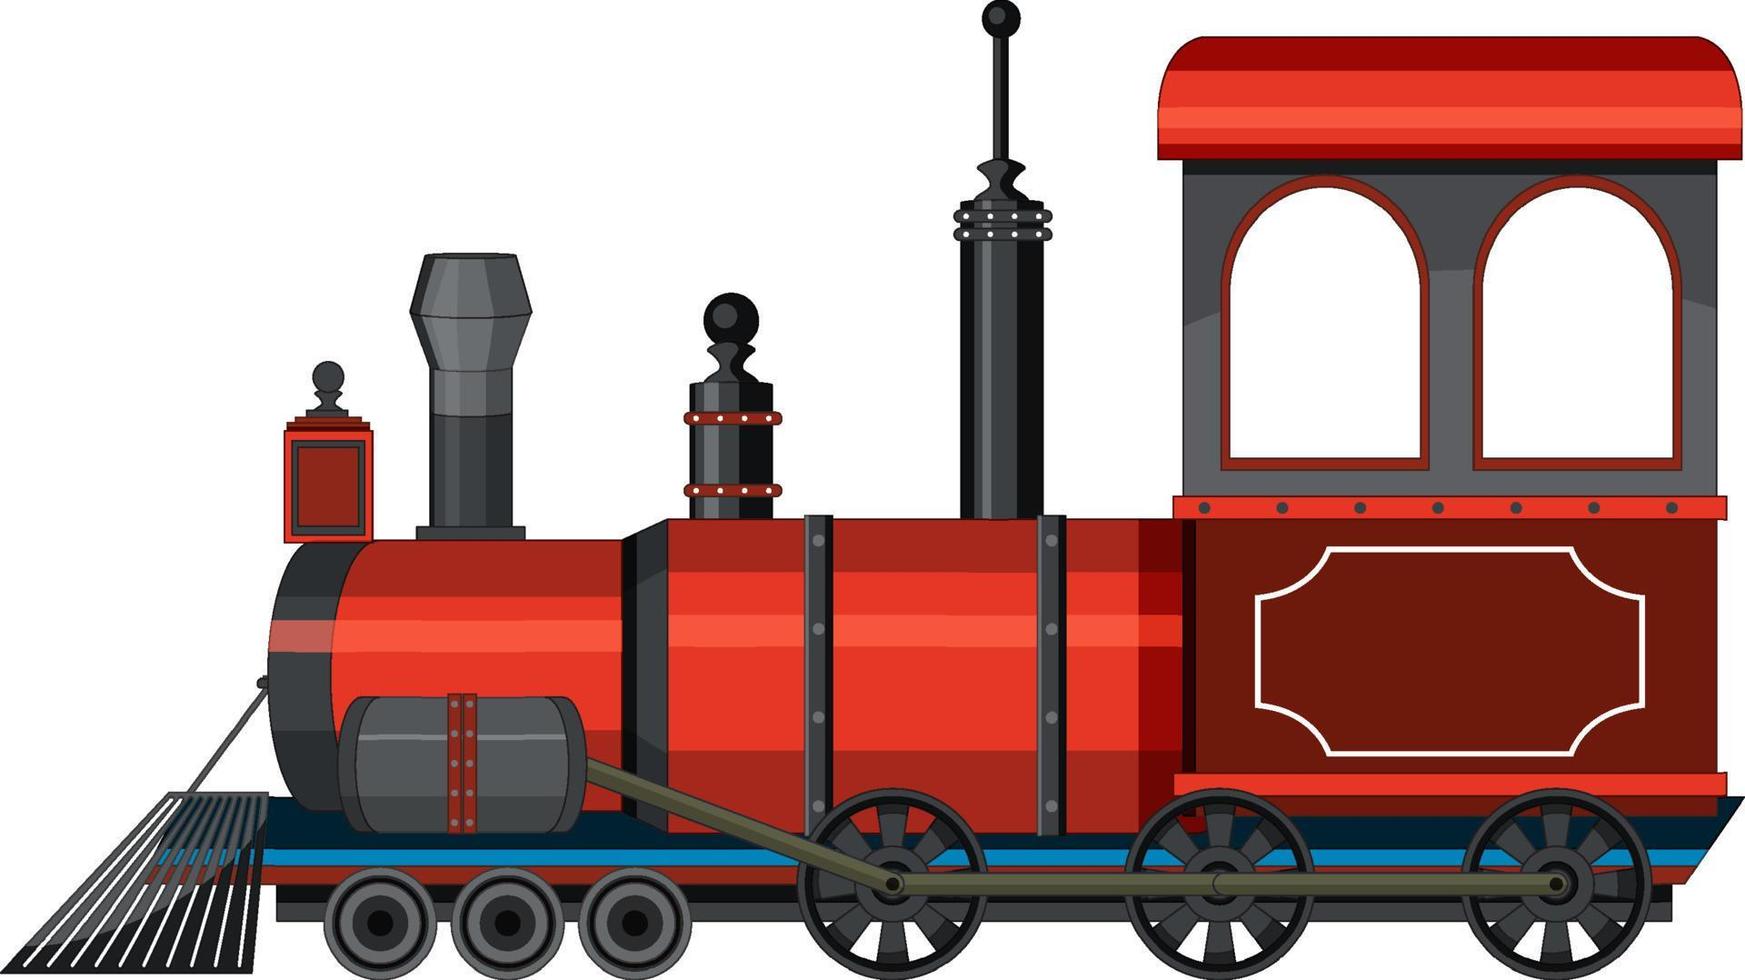 estilo vintage de trem de locomotiva a vapor vetor